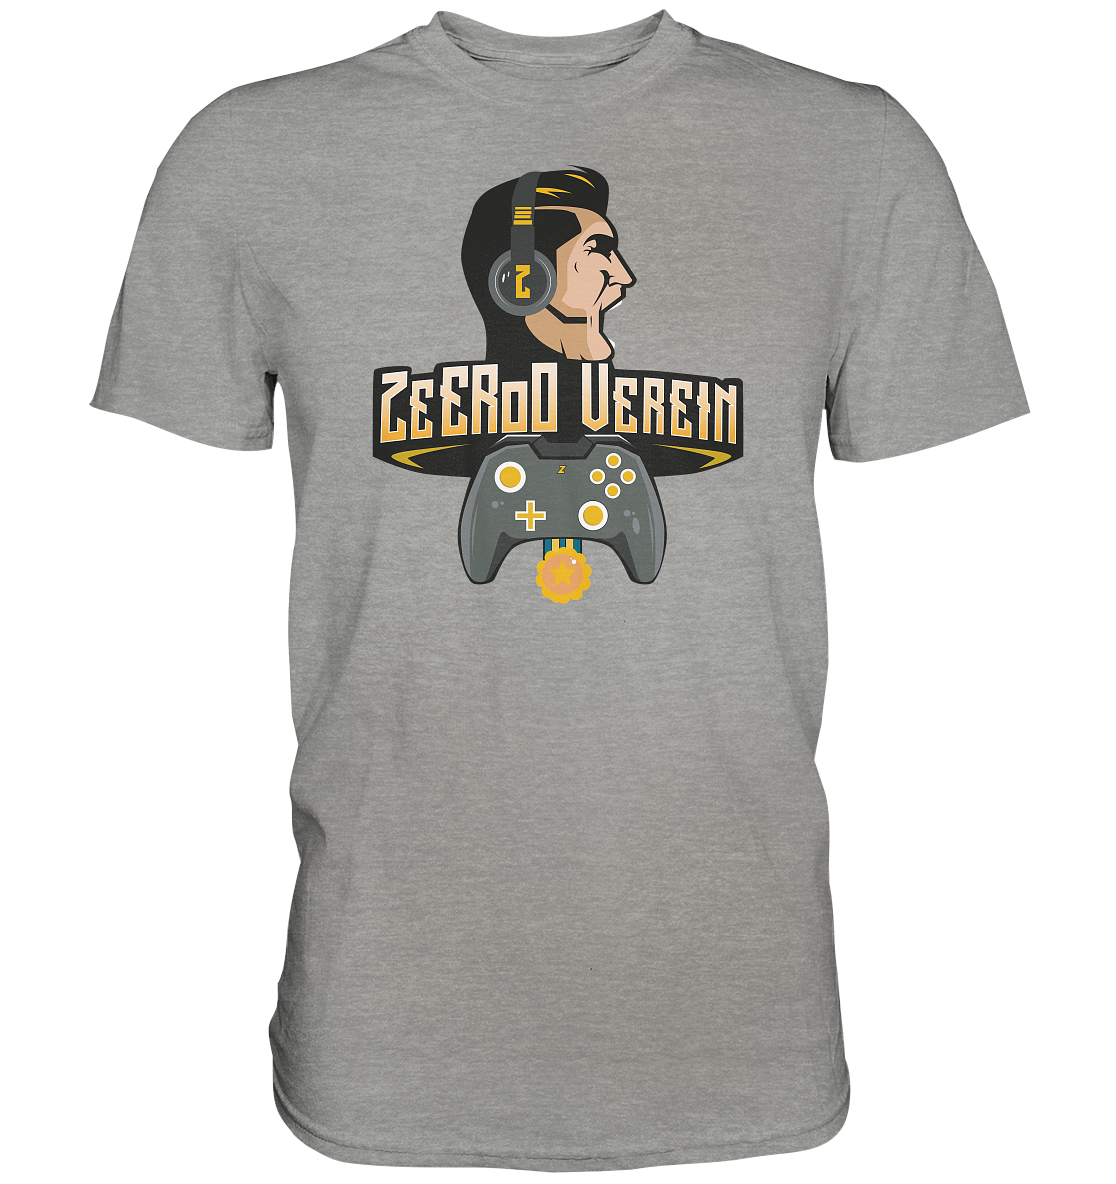 ZEEROO VEREIN - Basic Shirt